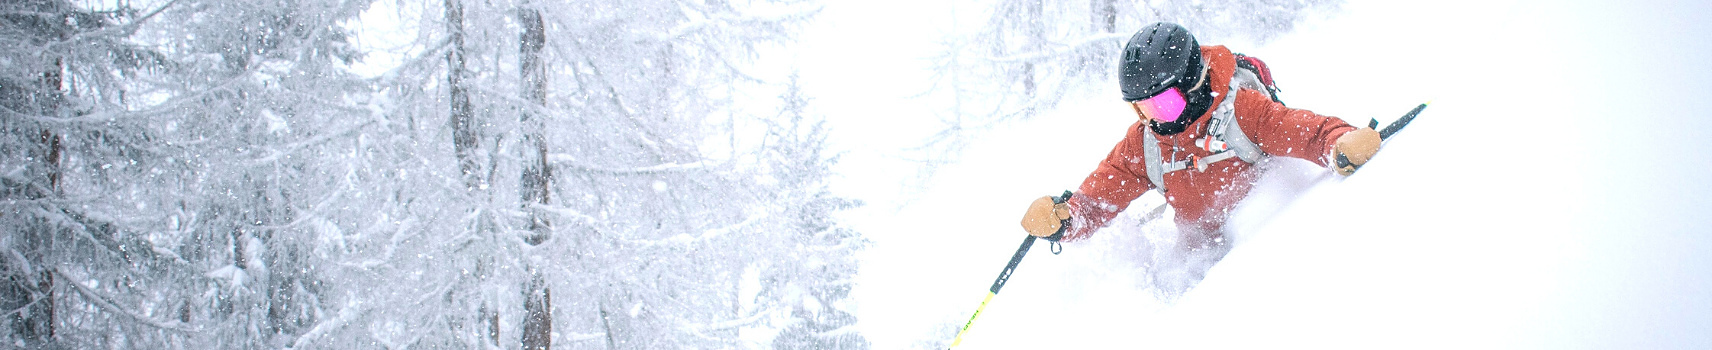 Masque de ski mixte | Juyar, marque française ski & snowboard